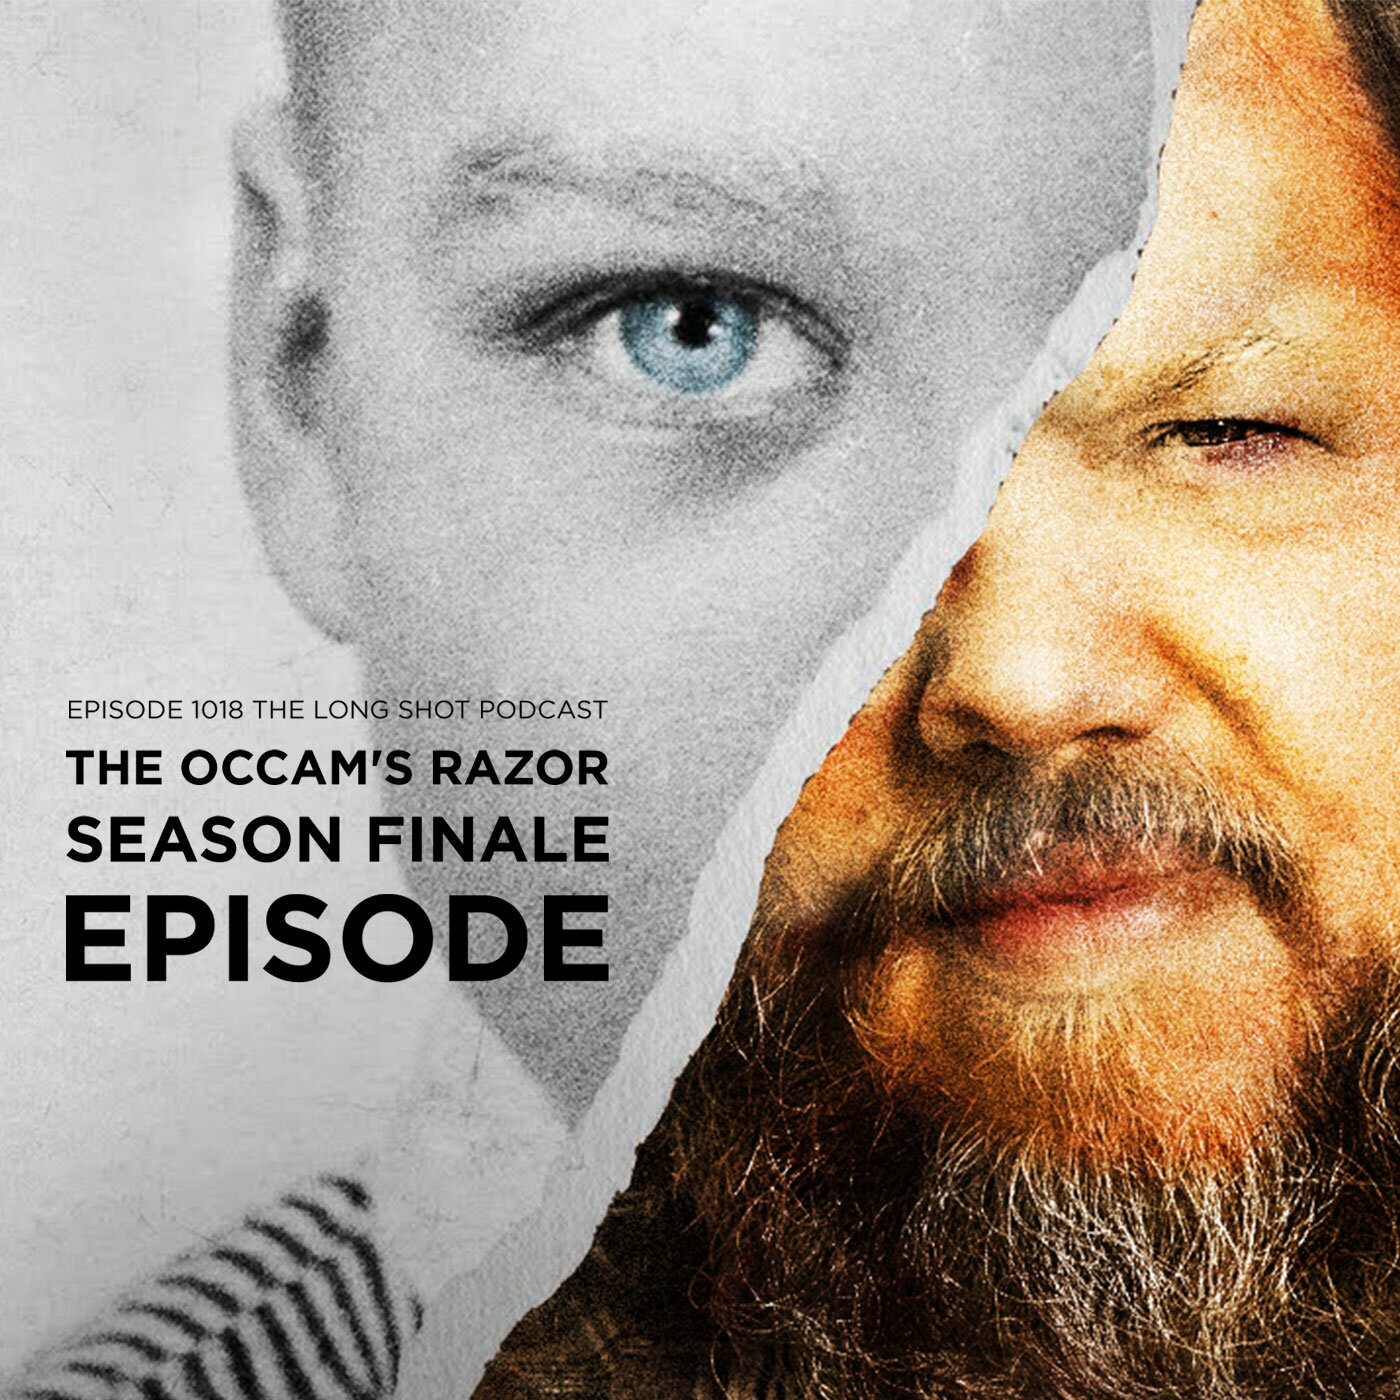 Episode #1018 The Occam's Razor Season Finale Episode